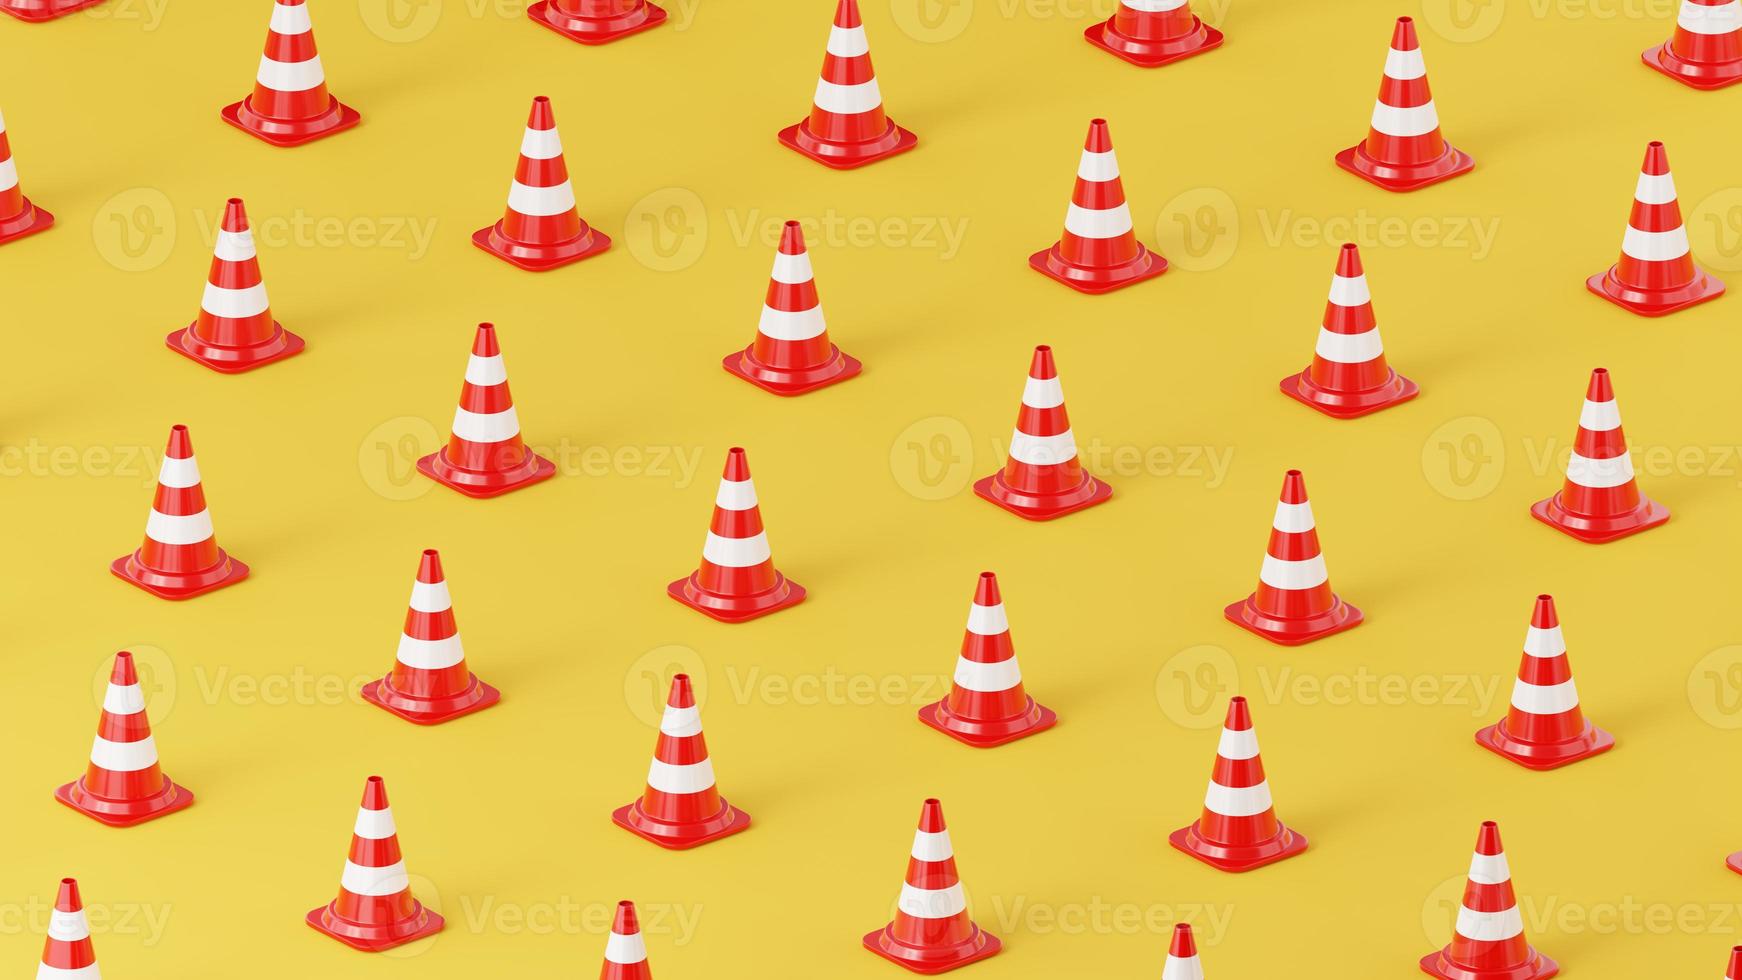 cones de trânsito com listras brancas sobre fundo colorido. posição isométrica da câmera foto